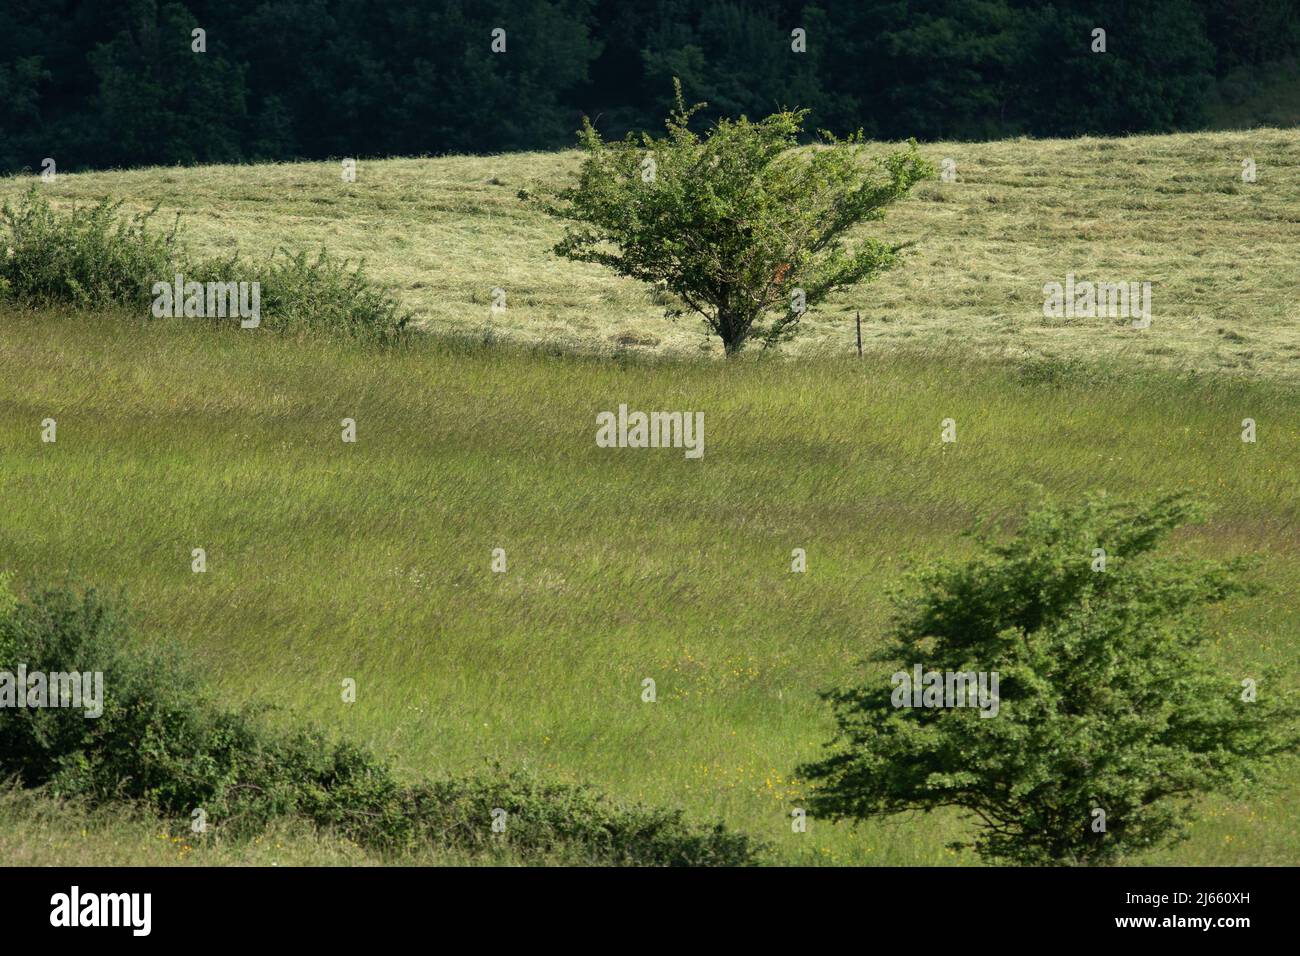 UN arbre au Milieu d'un champ avec différent ton de couleur verte Stockfoto